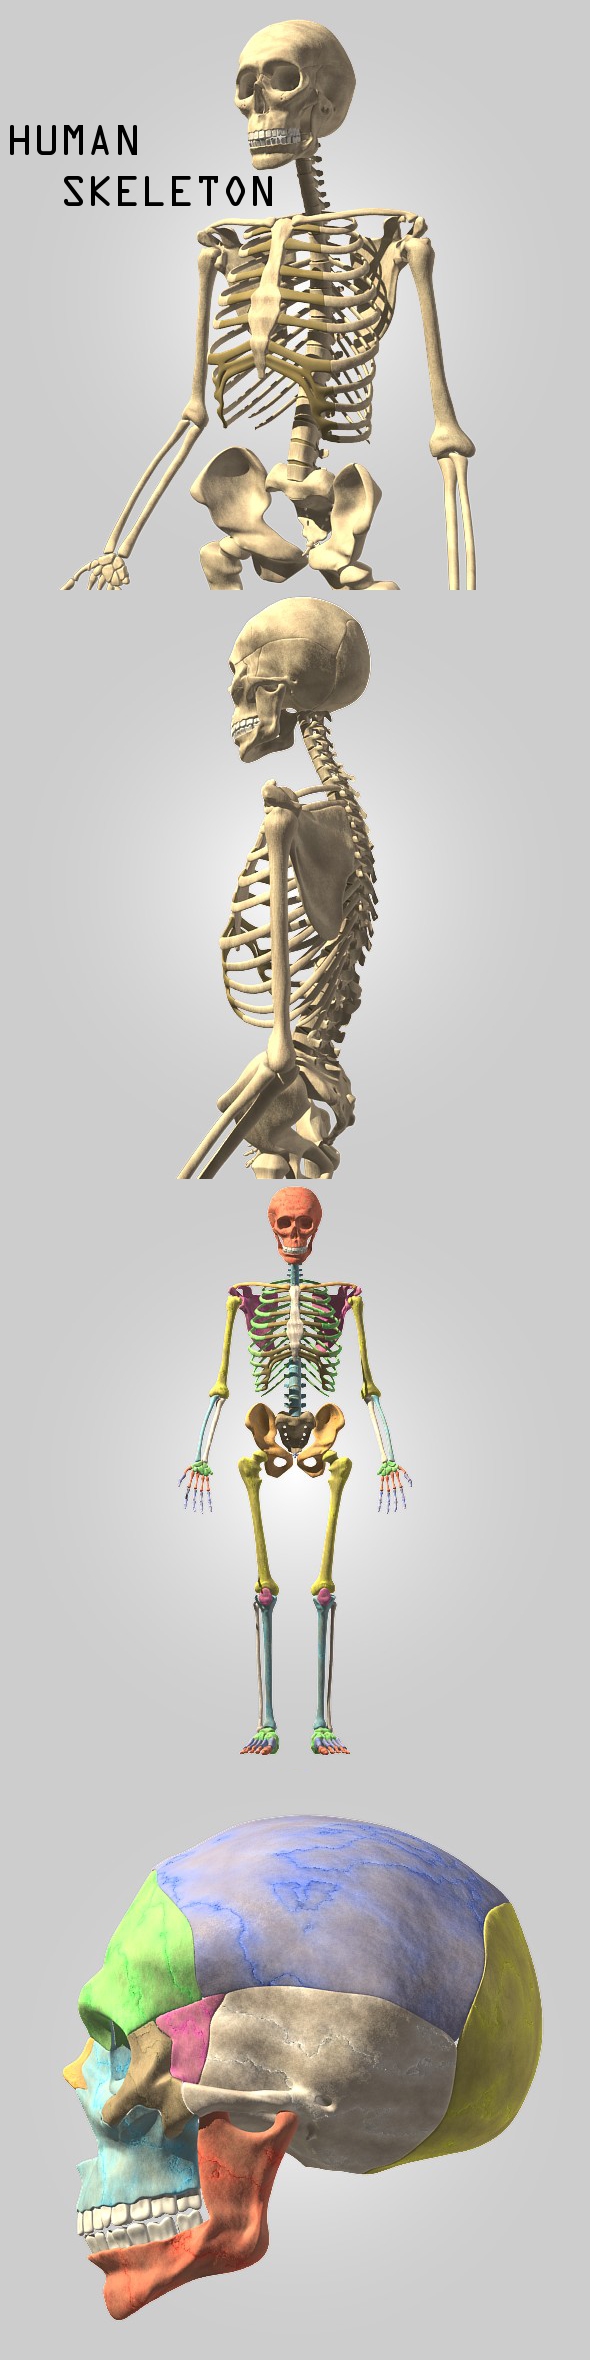 Human skeleton - 3Docean 116616